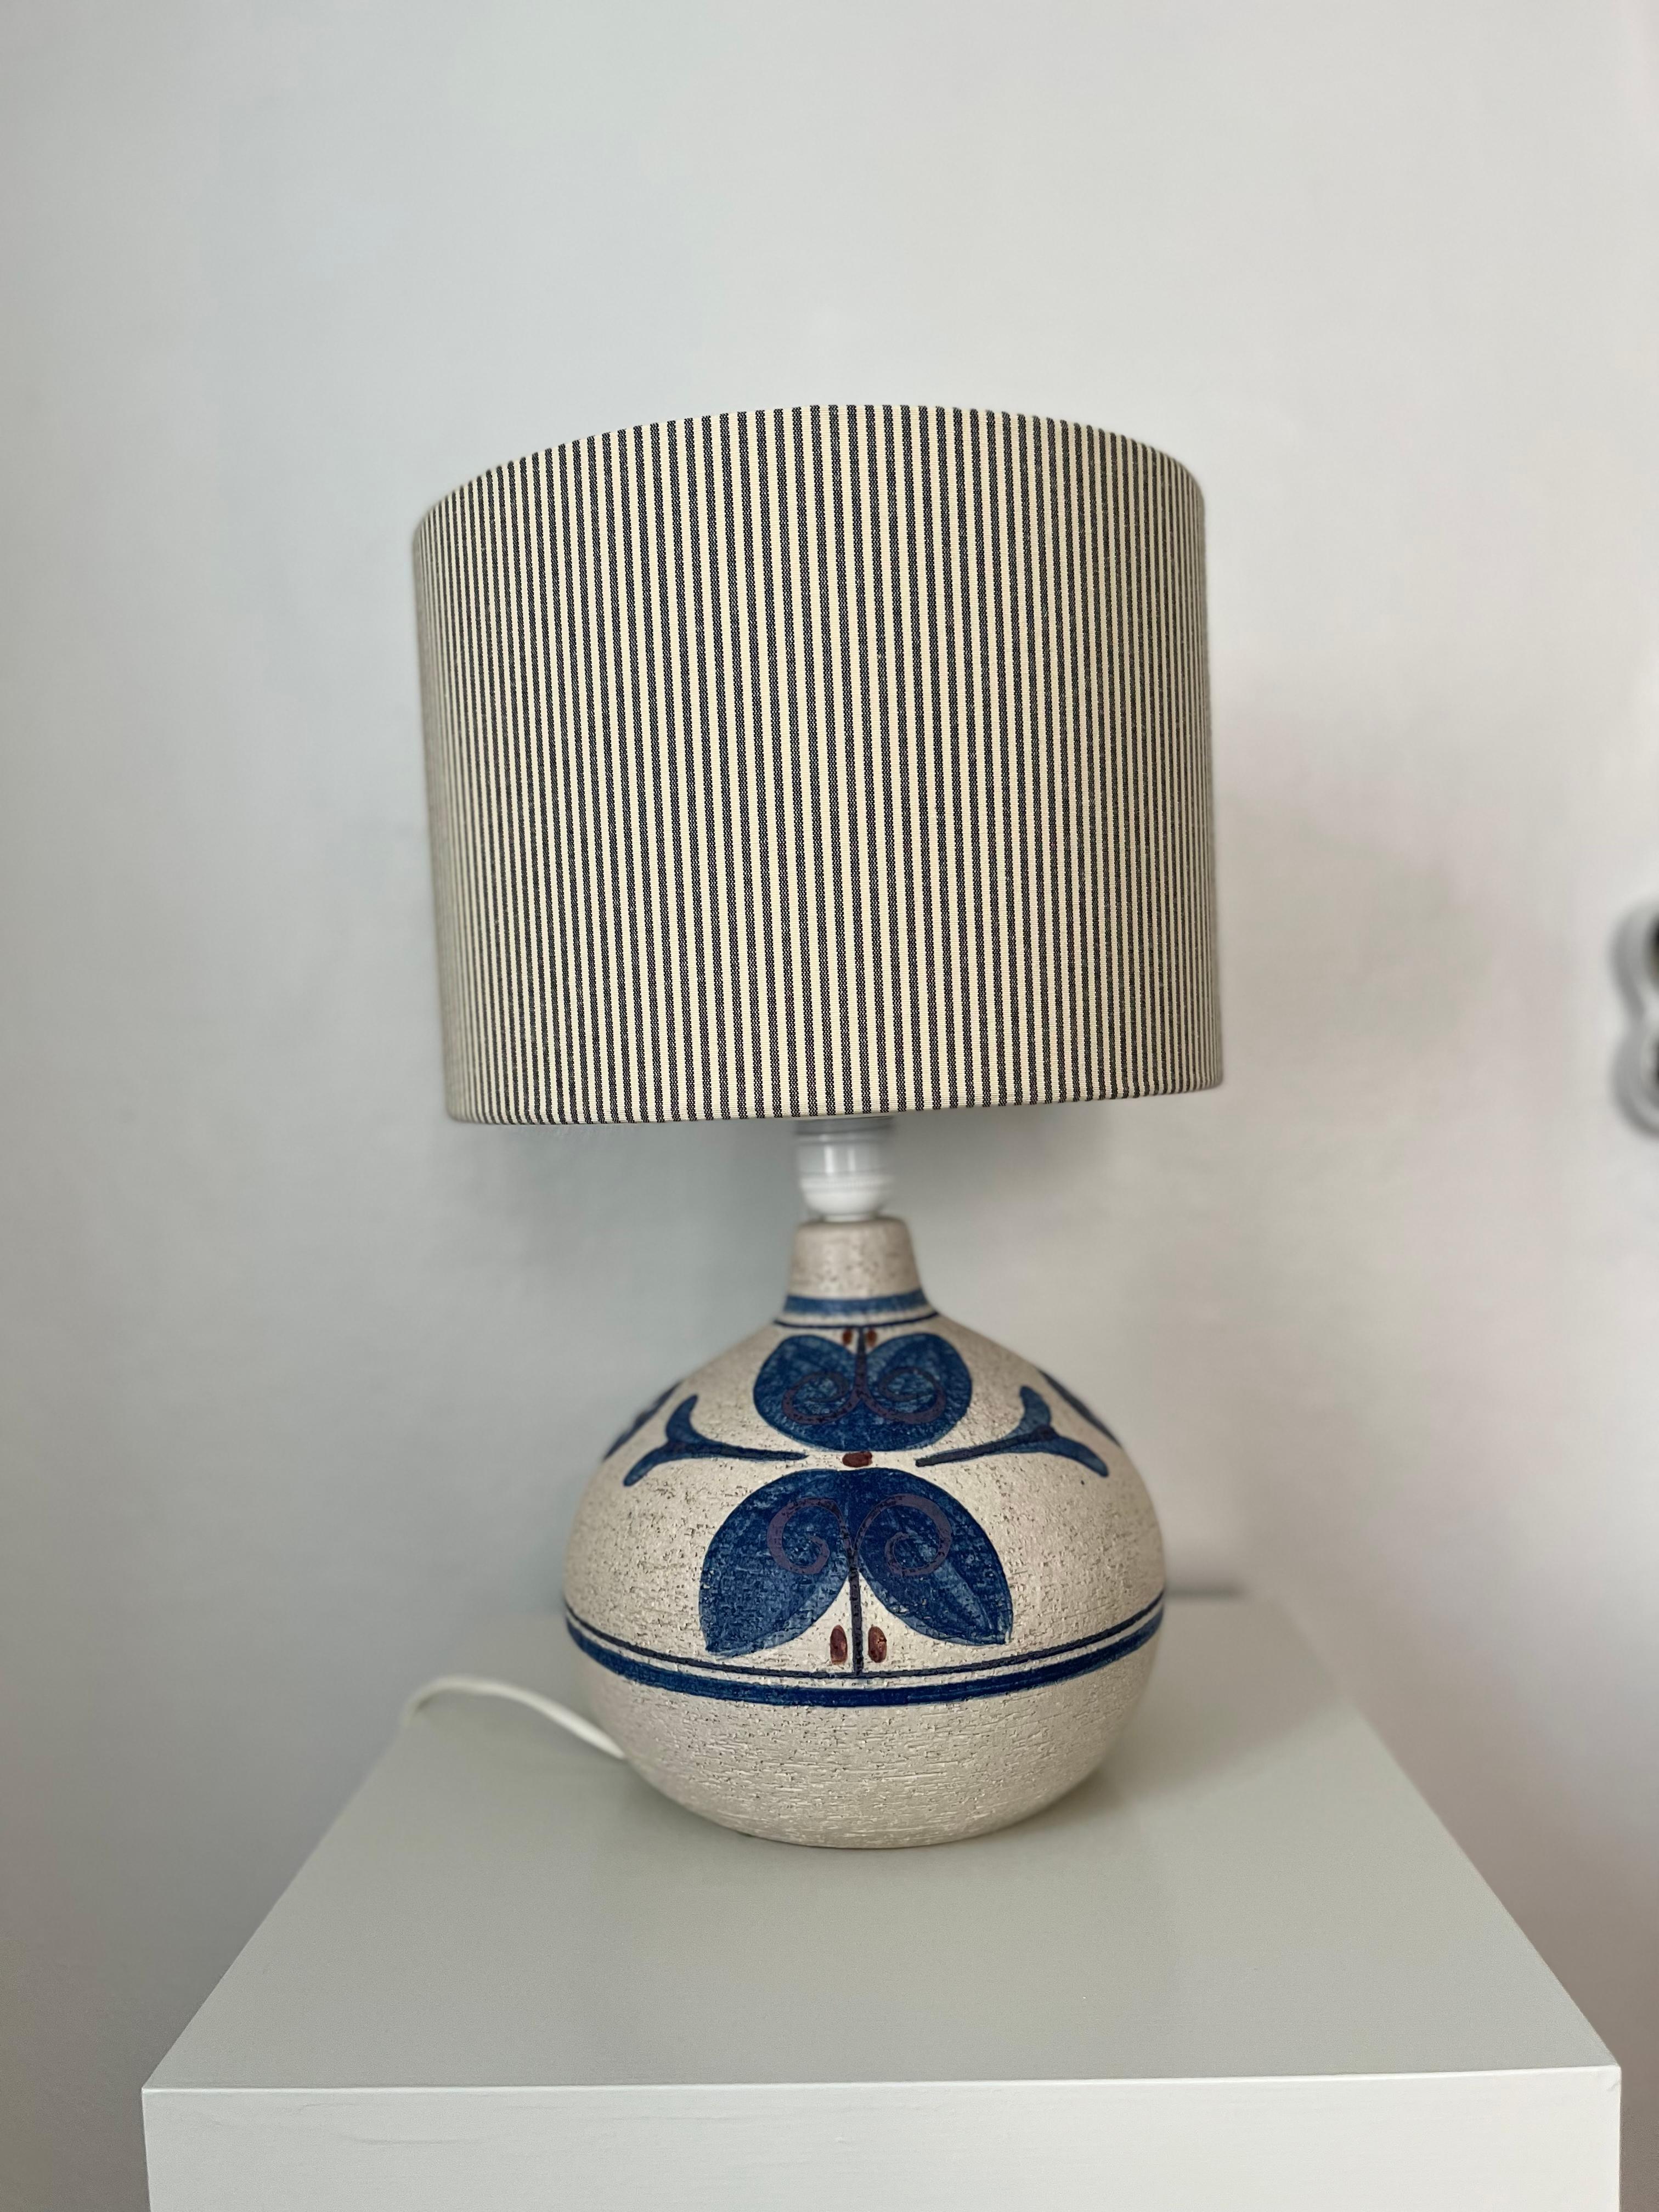 1960er Jahre Dänische Keramik-Tischlampe von Noomi Backhausen für Søholm

Diese matte Keramik-Tischleuchte wurde in den 1960er Jahren von Noomi Backhausen für das dänische Unternehmen Søholm entworfen. Dekoriert in klarem Blau und hellem Violett.